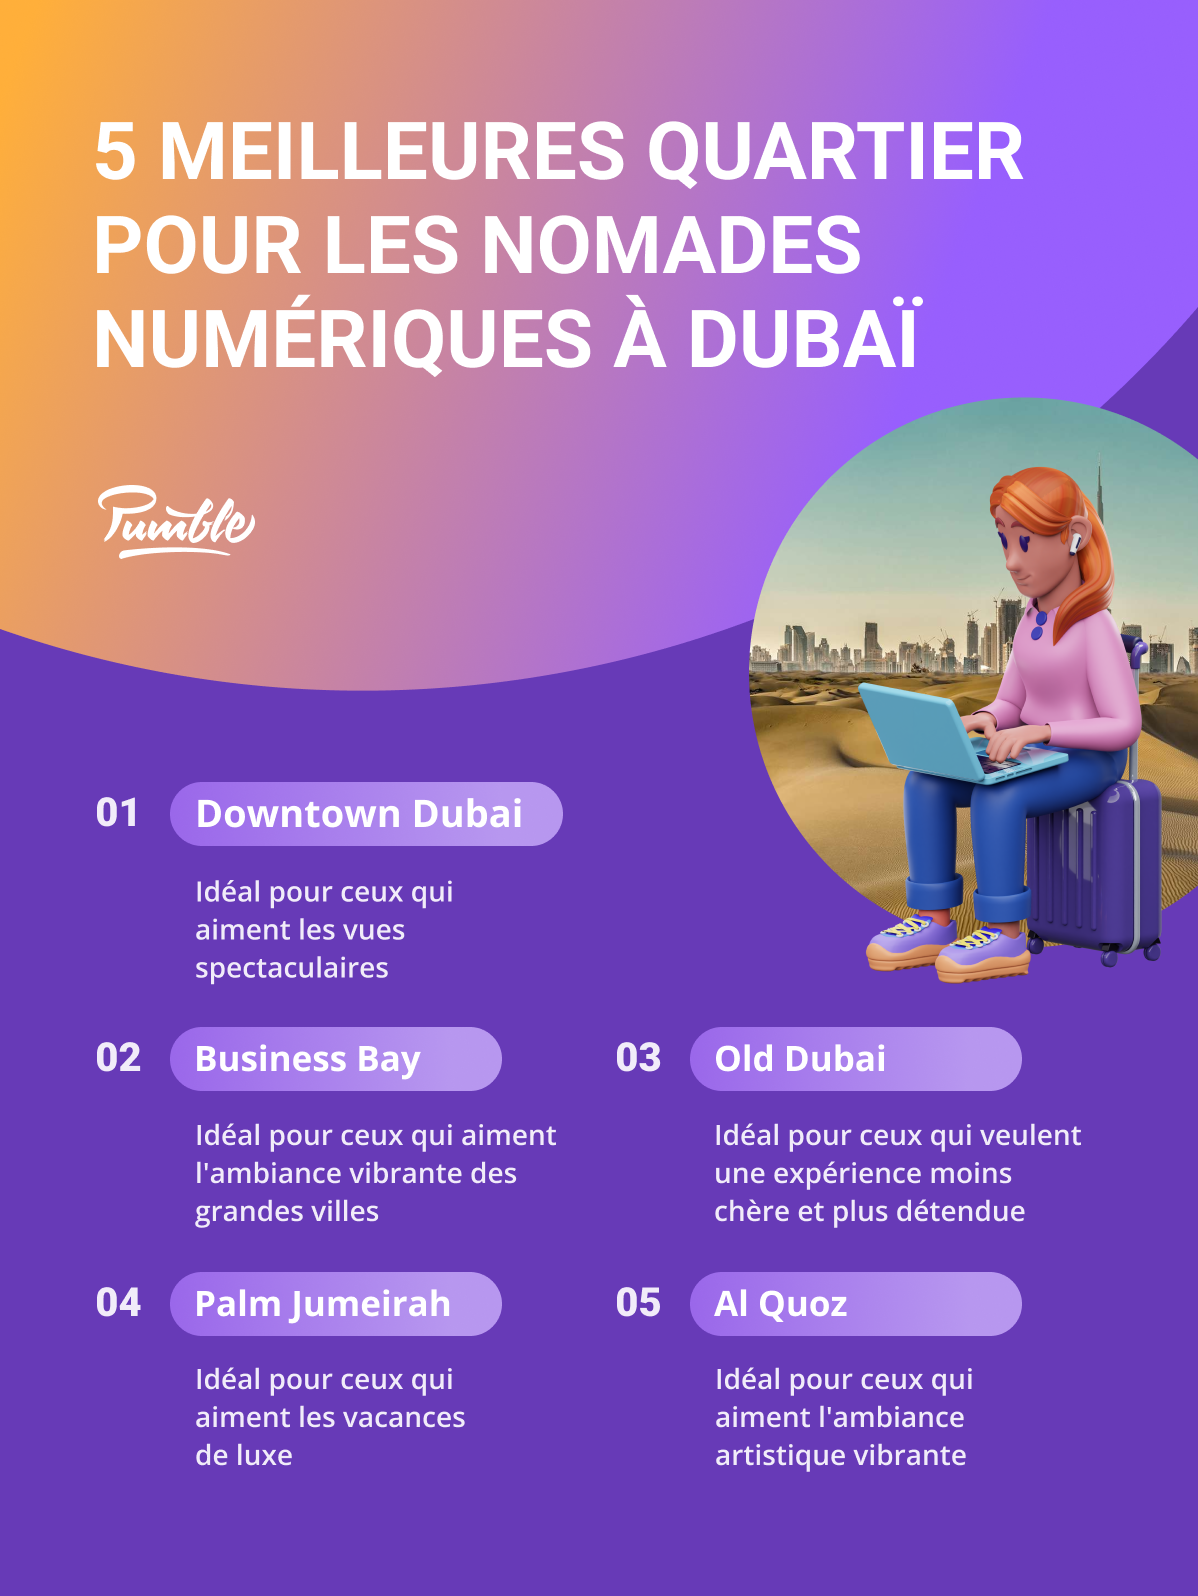 Les 5 meilleurs quartiers pour les nomades numériques à Dubaï